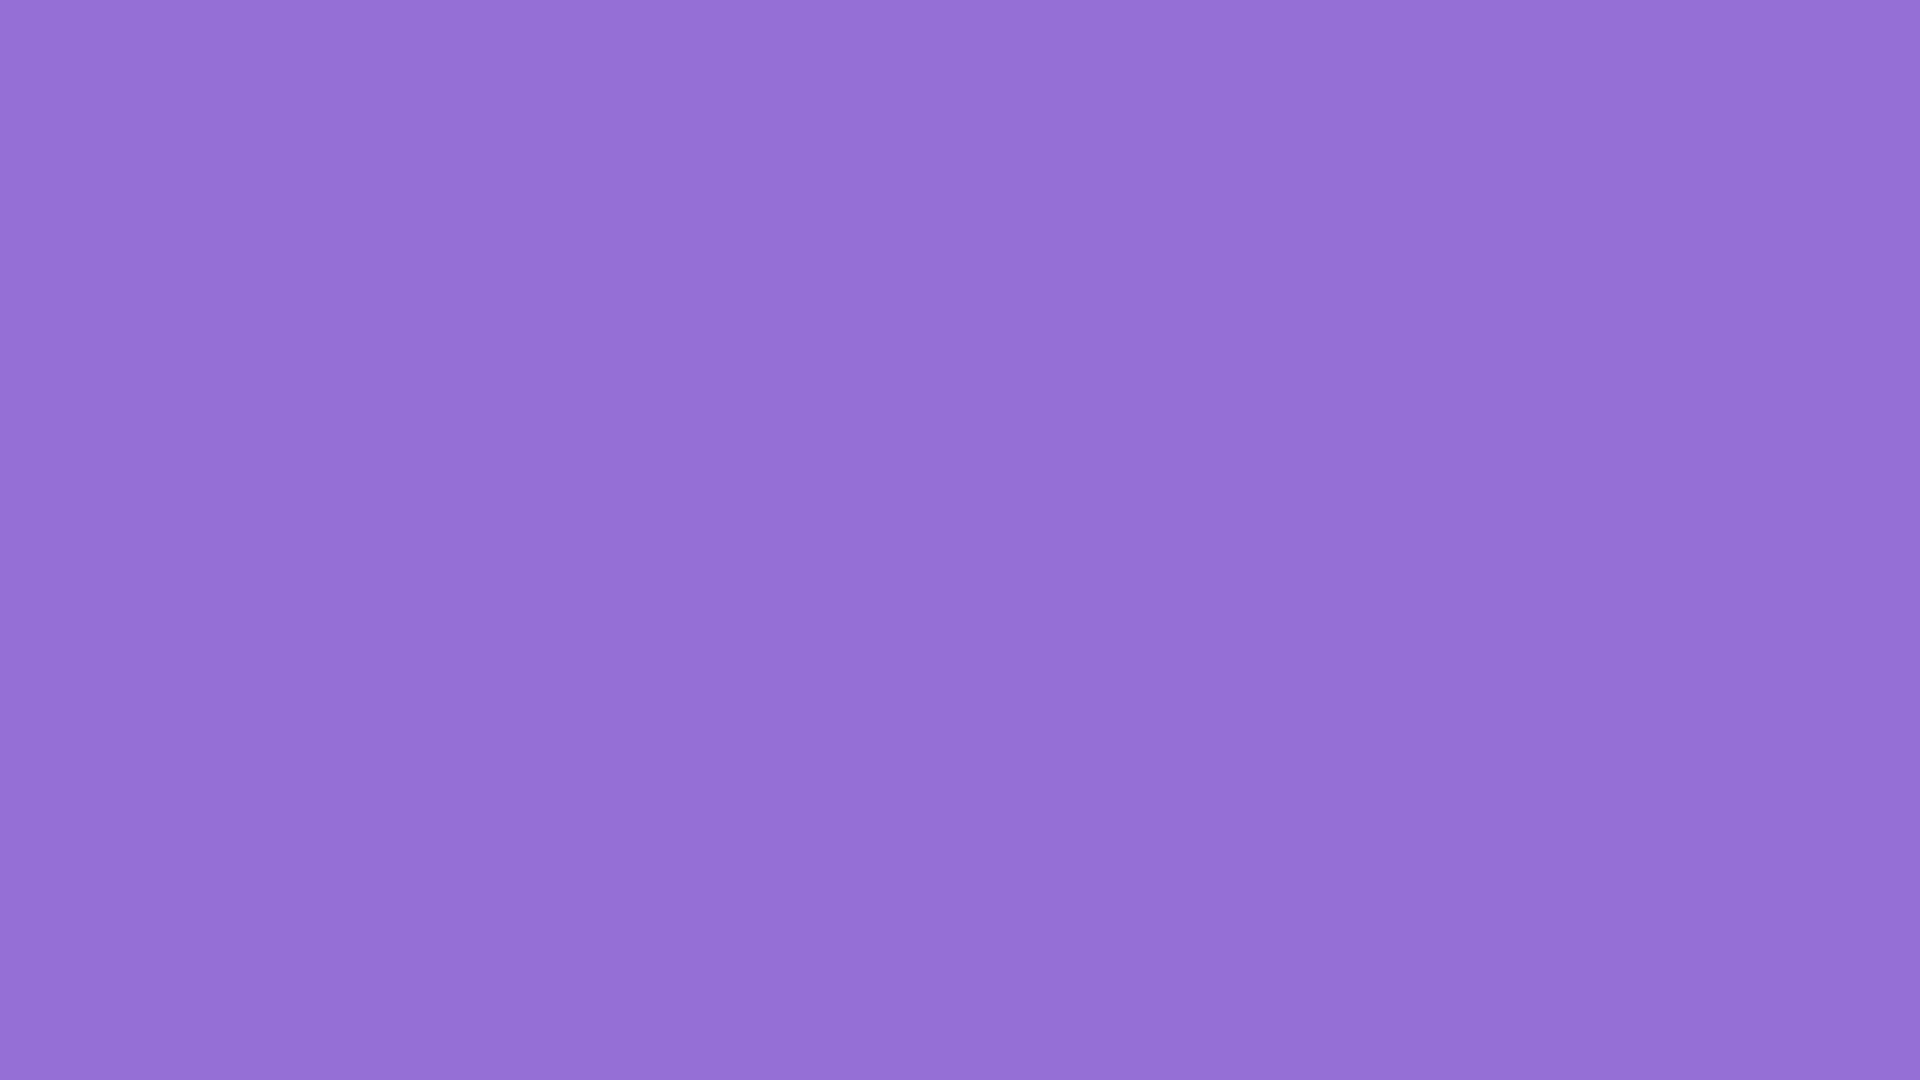 1920x1080 ... dark purple backgrounds wallpaper cave; blue wallpaper plain color ...